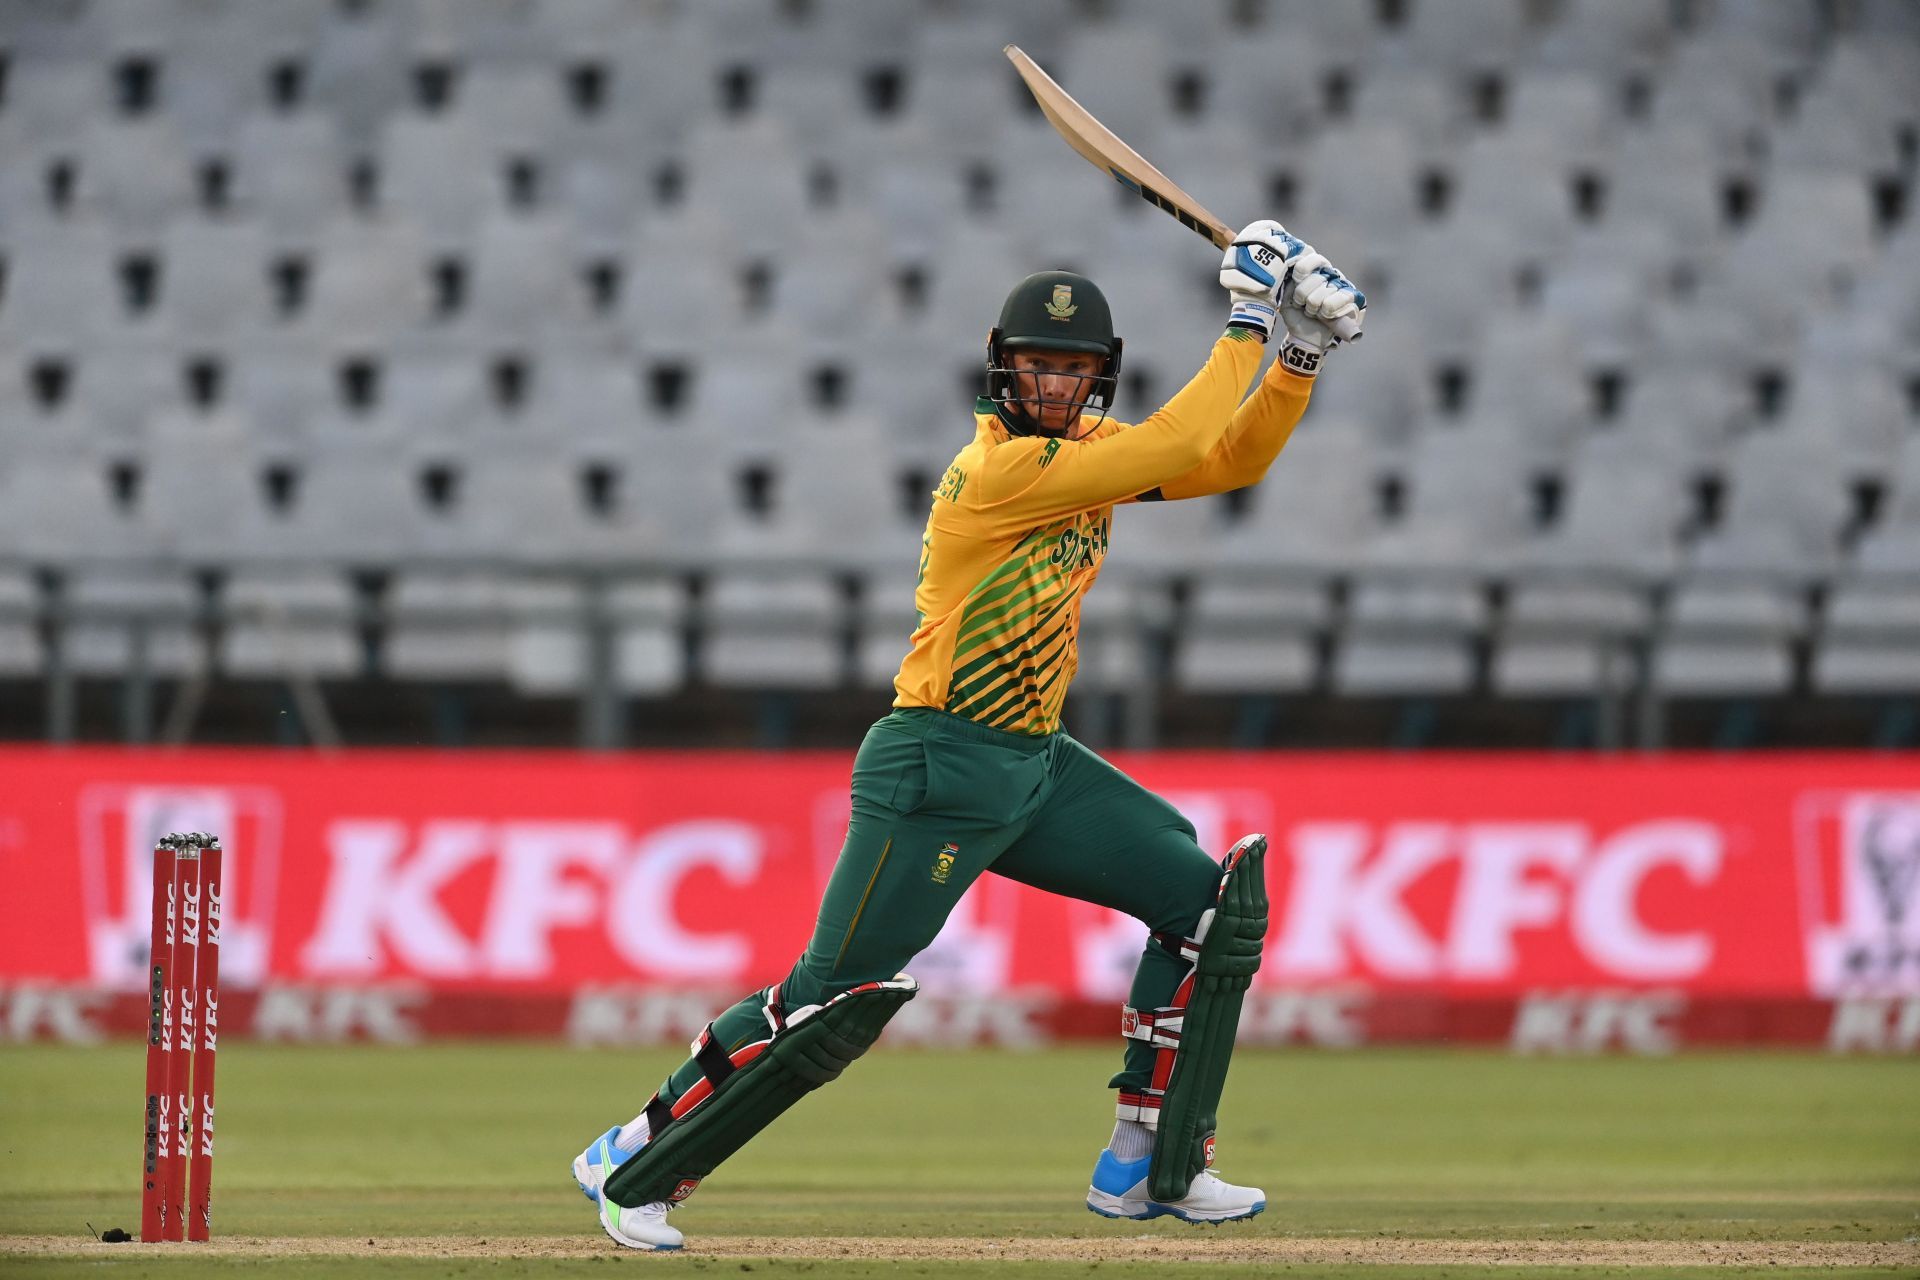 Rassie van der Dussen in action during the South Africa v England 1st T20 International in 2020